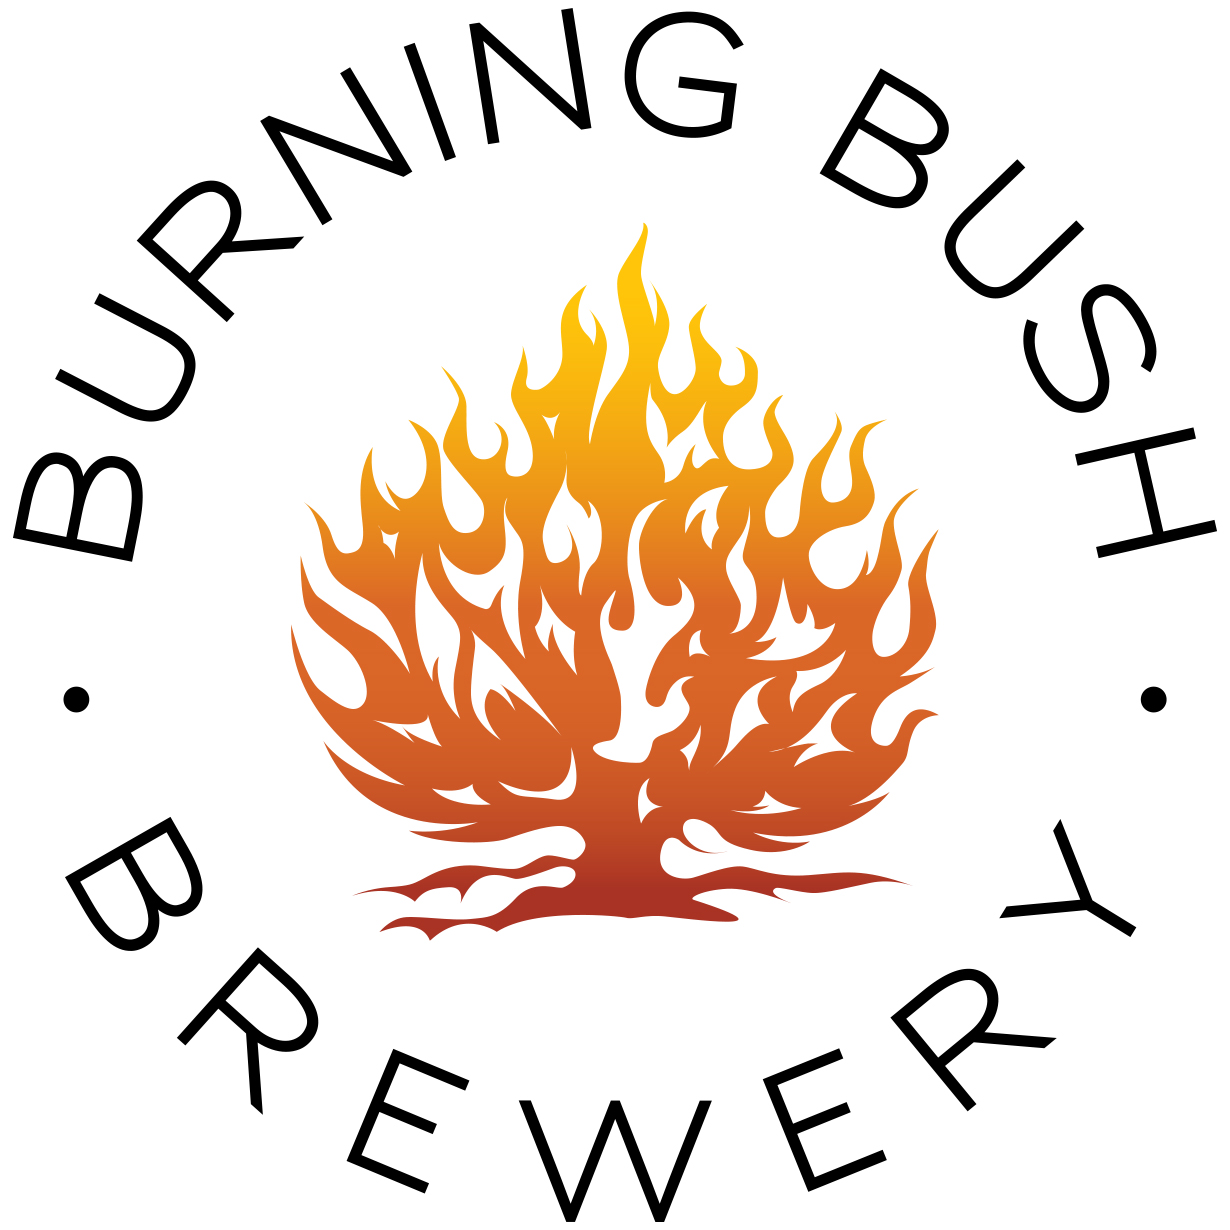 Burning Bush Brewery